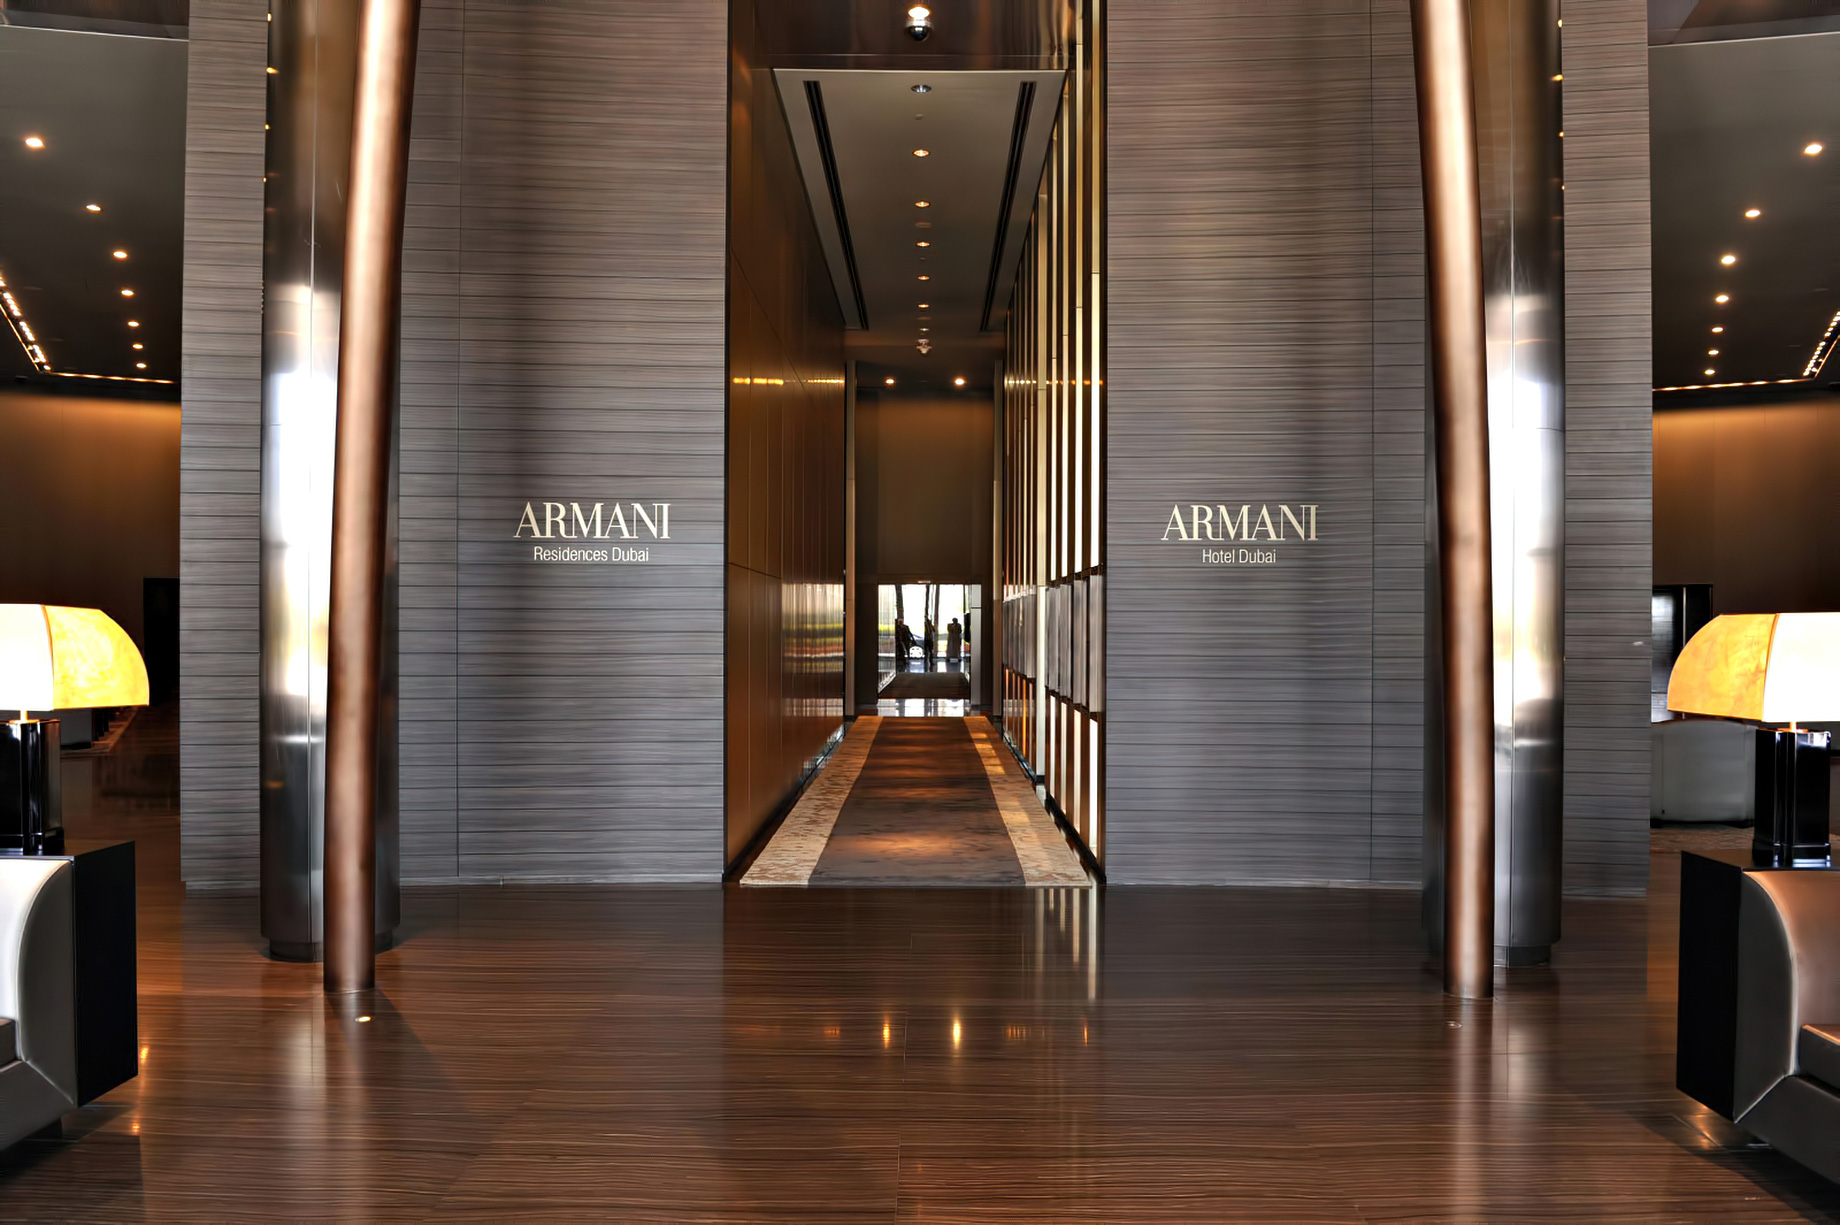 Armani Hotel Dubai - Burj Khalifa, Dubai, UAE - Armani Hotel Interior Entrance